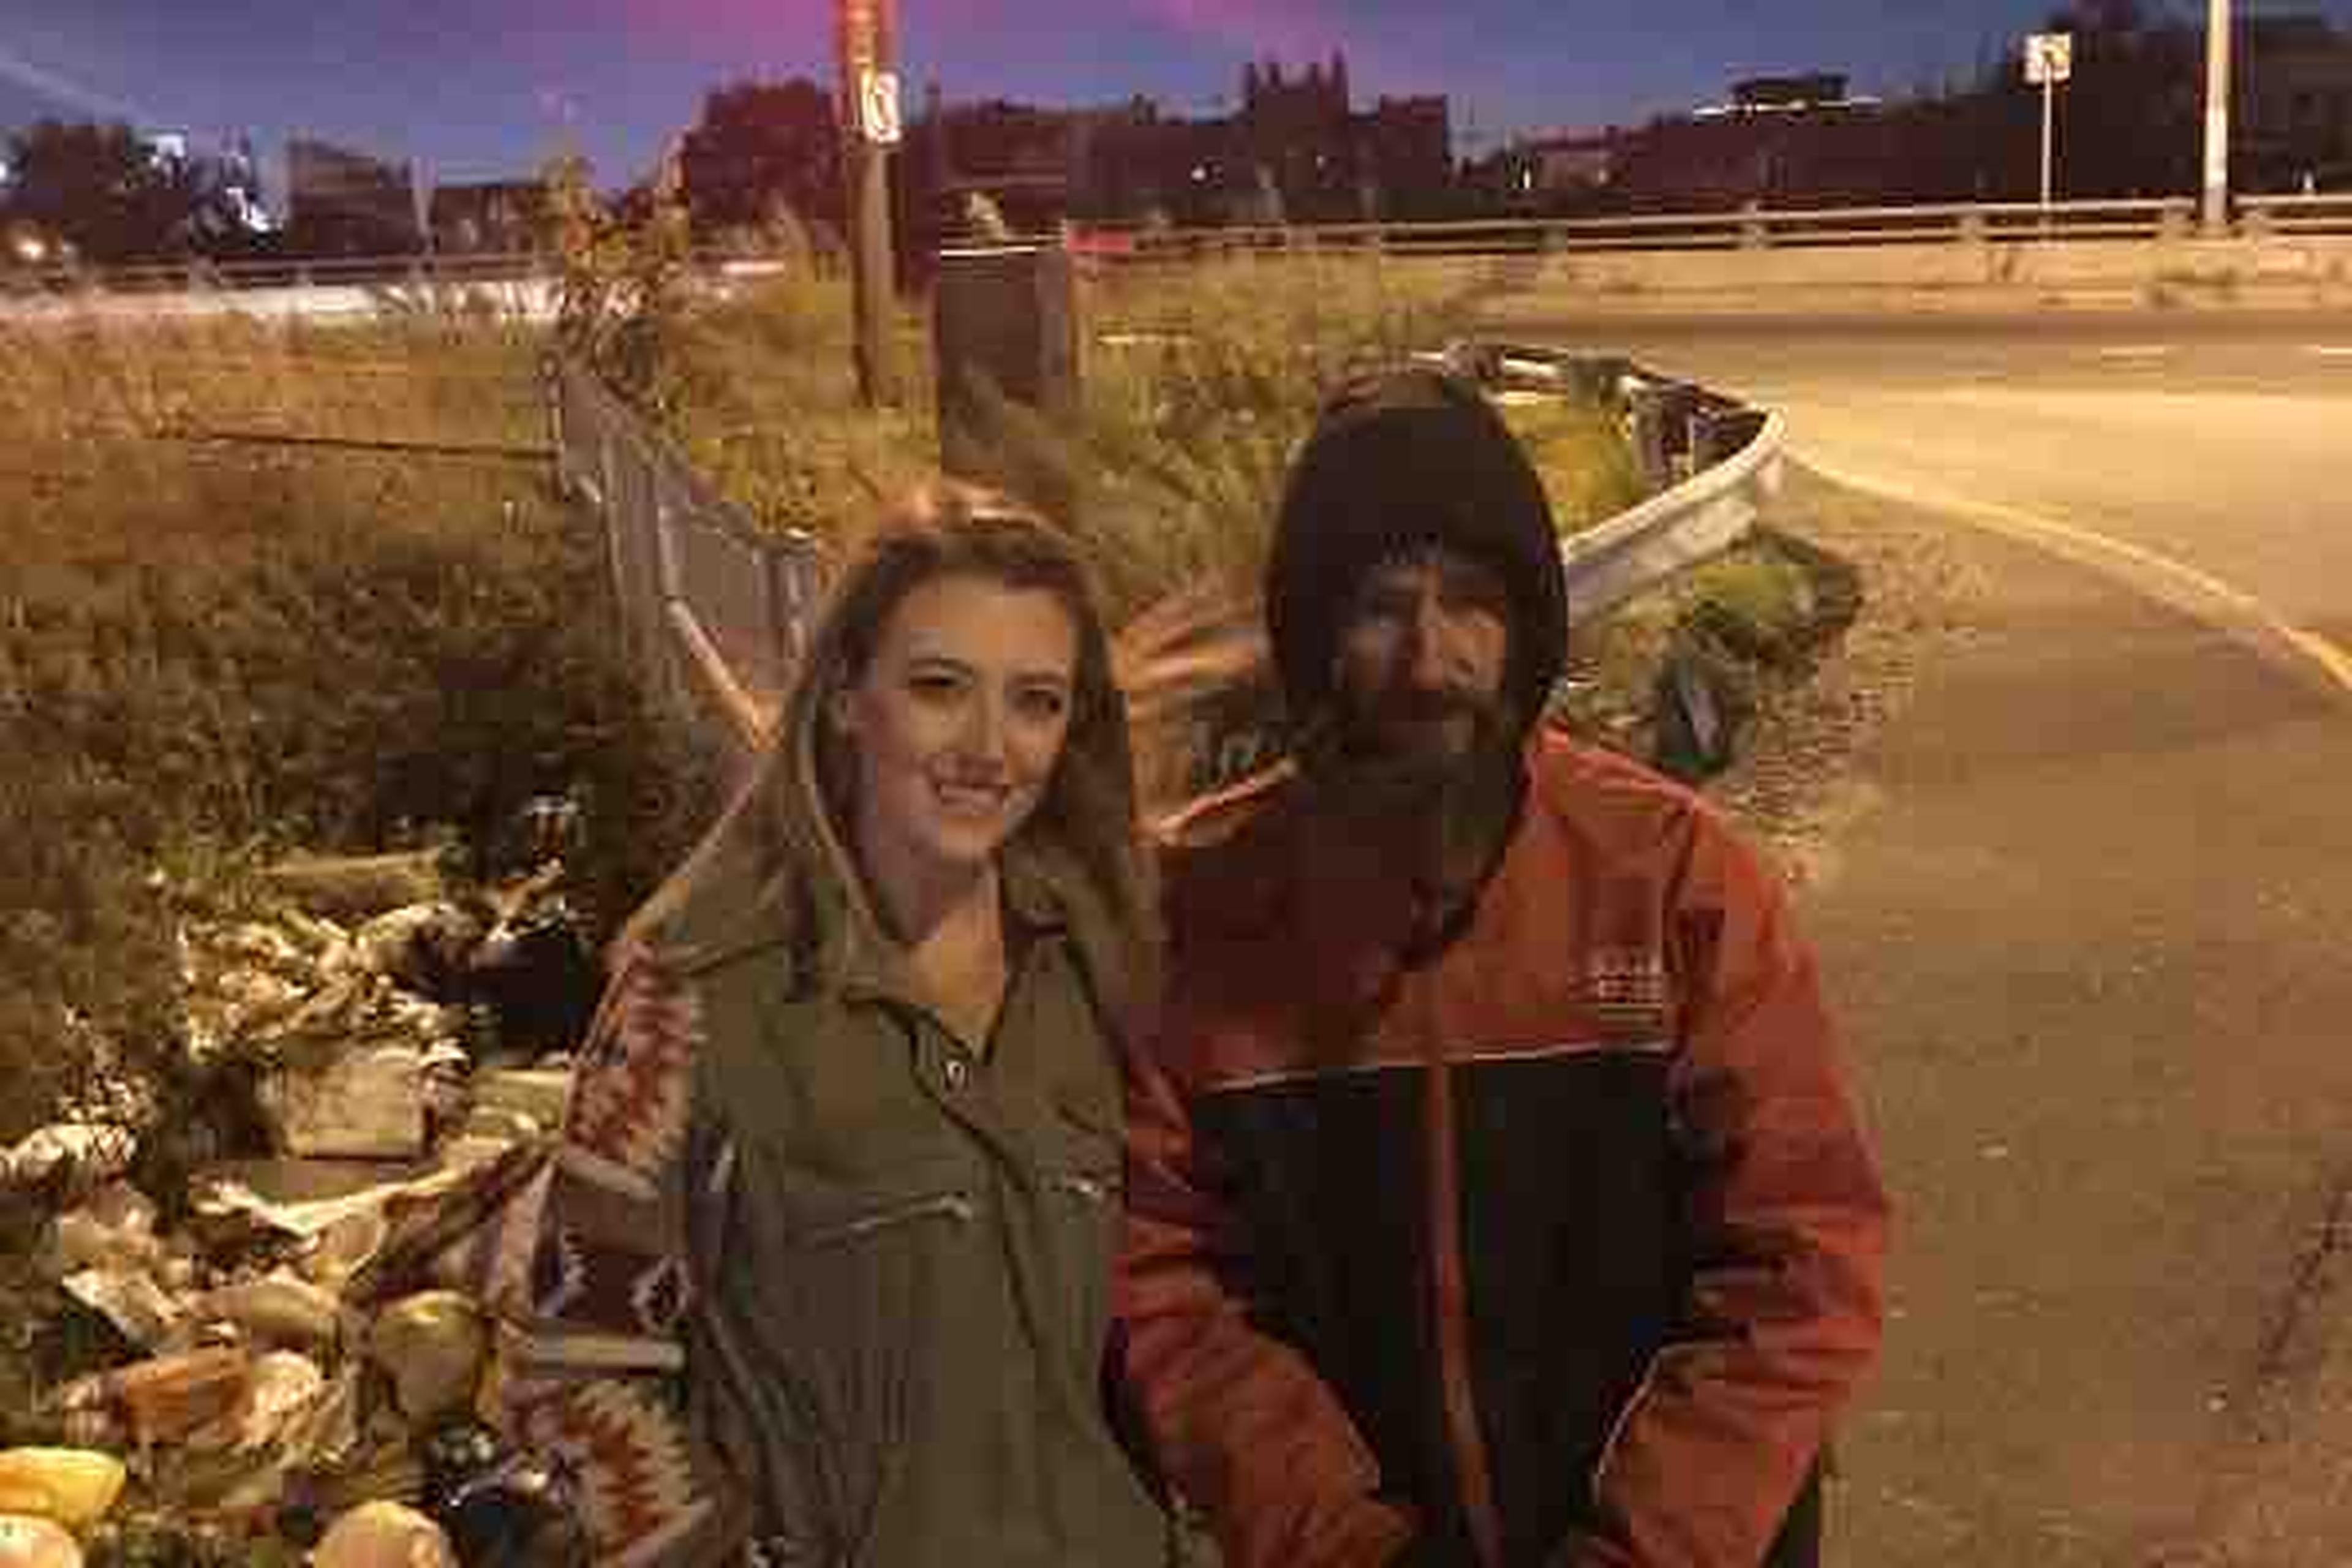 Johnny Bobbitt Jr., de 34 años, y que no tenía hogar, se gastó los 20 dólares que le quedaban en ayudar a una desconocida, Kate McClure, de 29, para que pudiese volver a casa tras quedarse sin gasolina en la autopista.